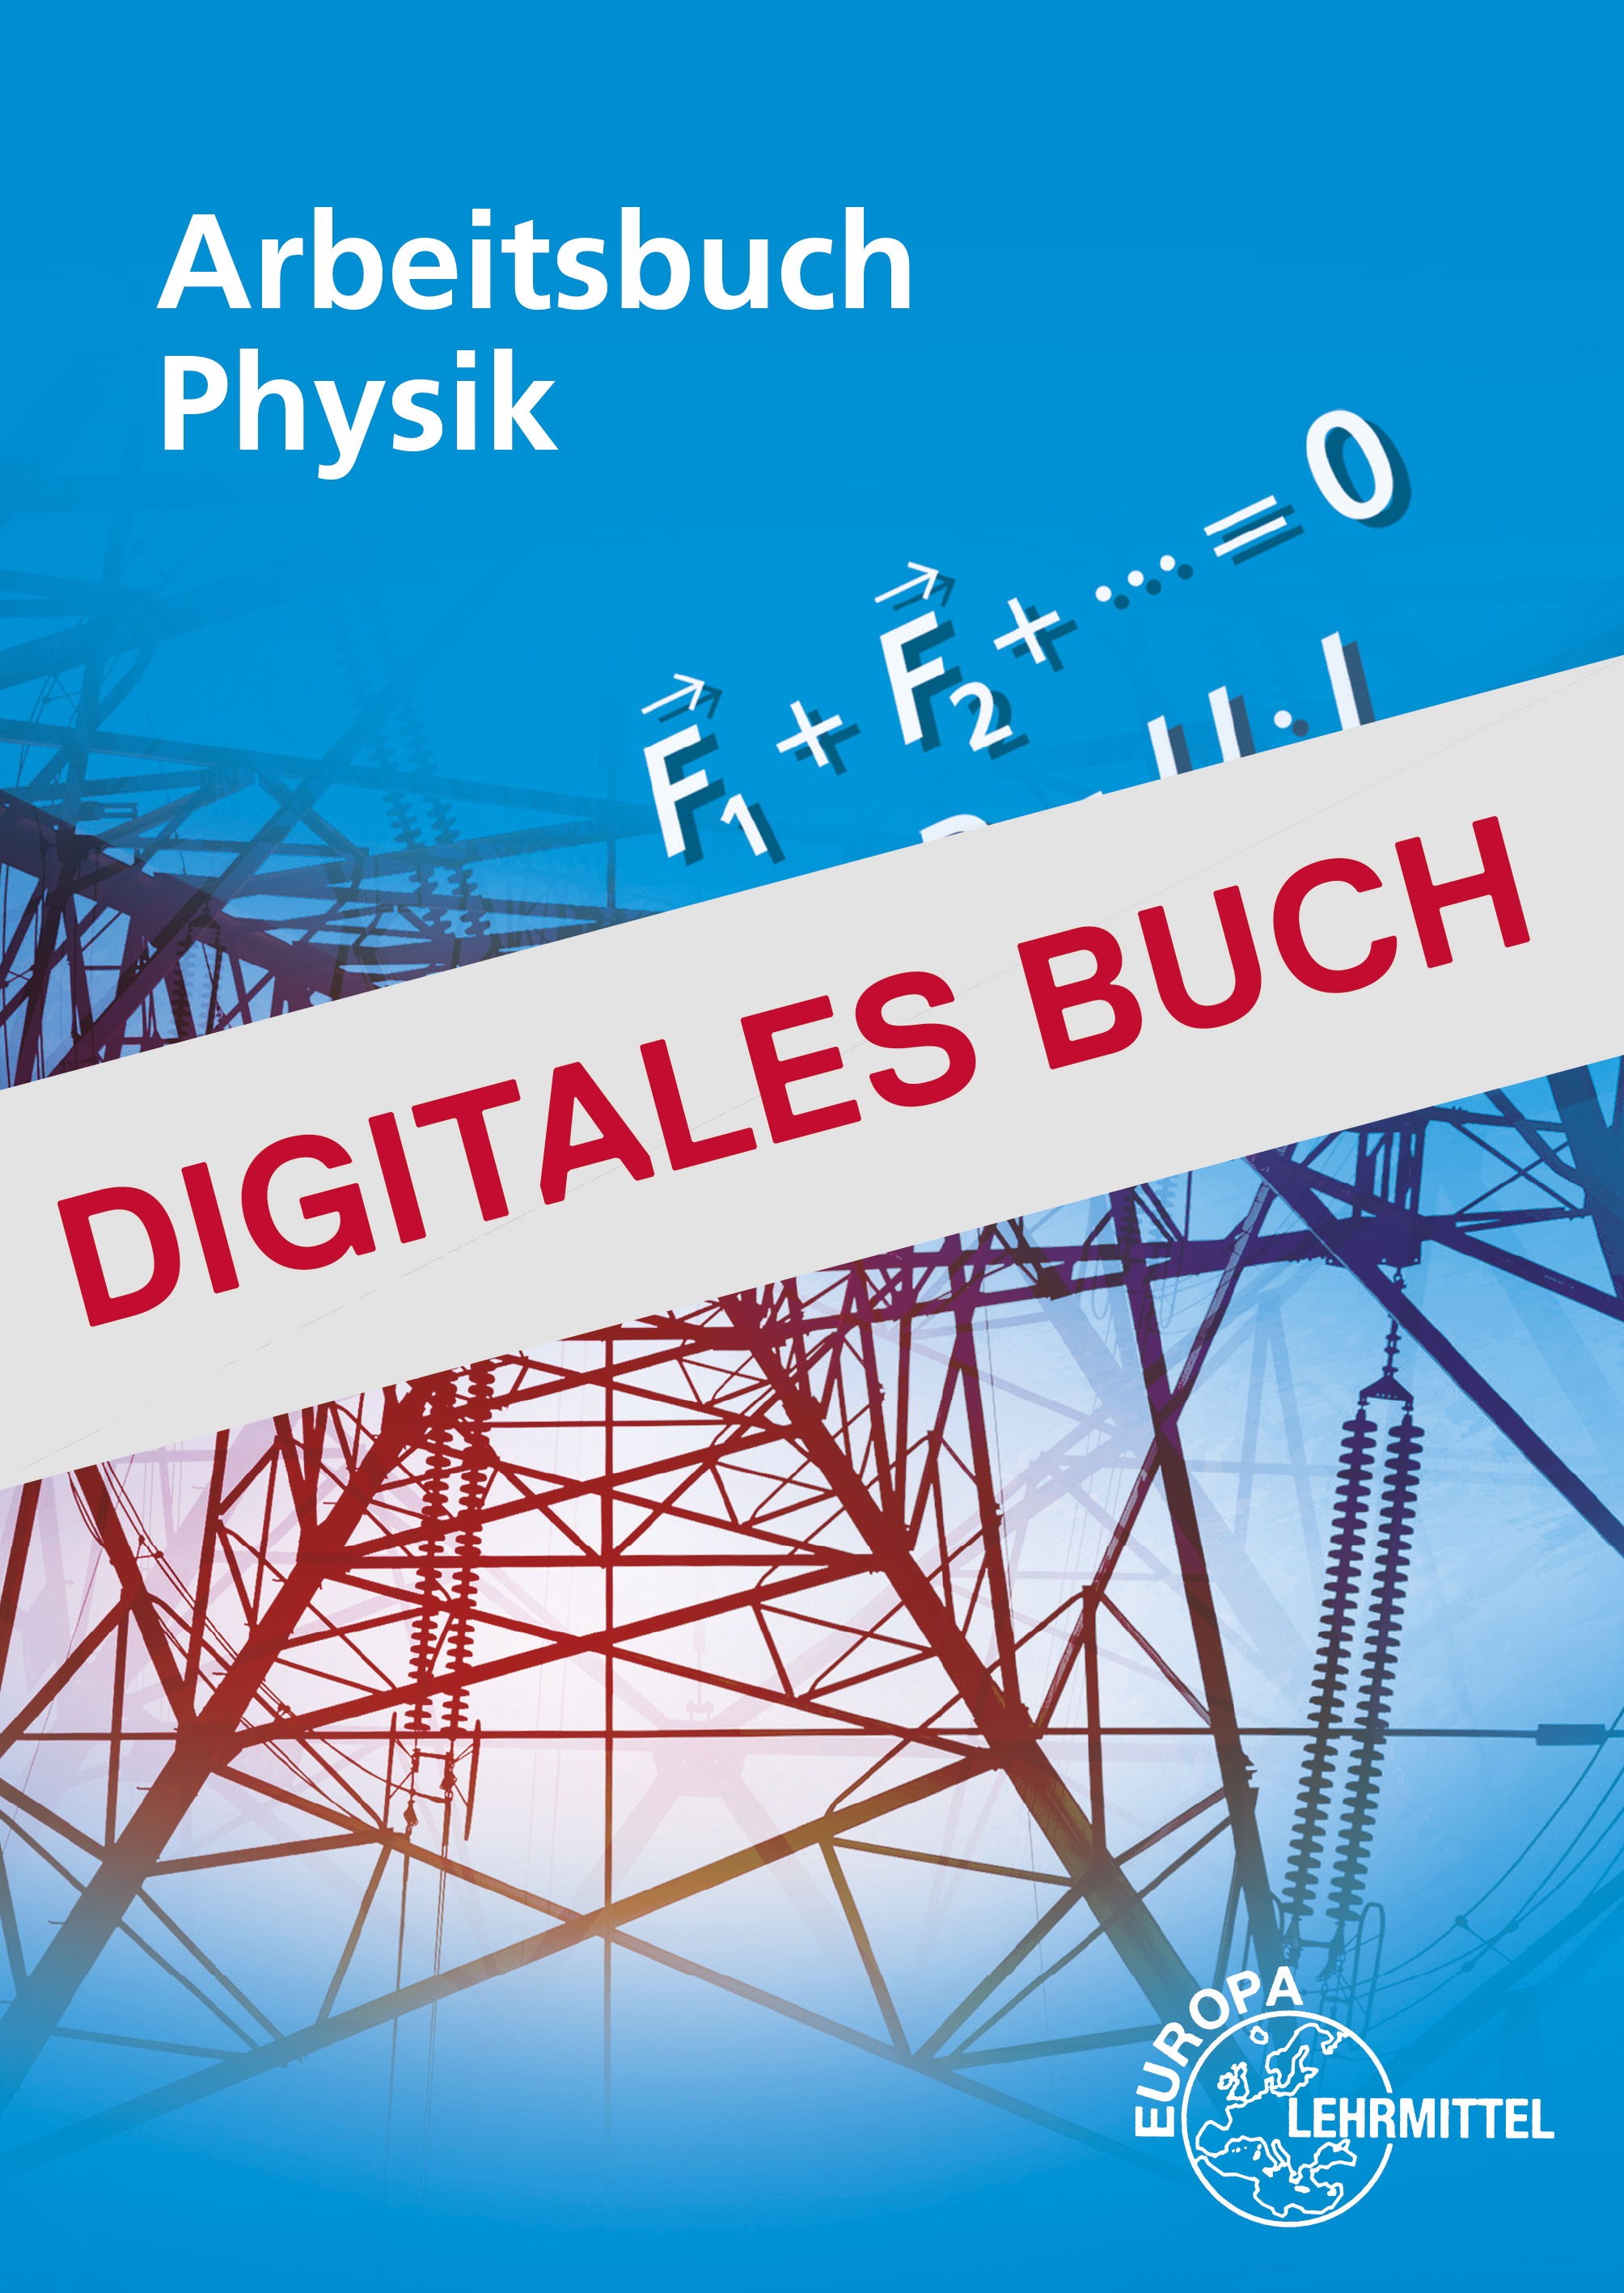 Arbeitsbuch Physik - Digitales Buch